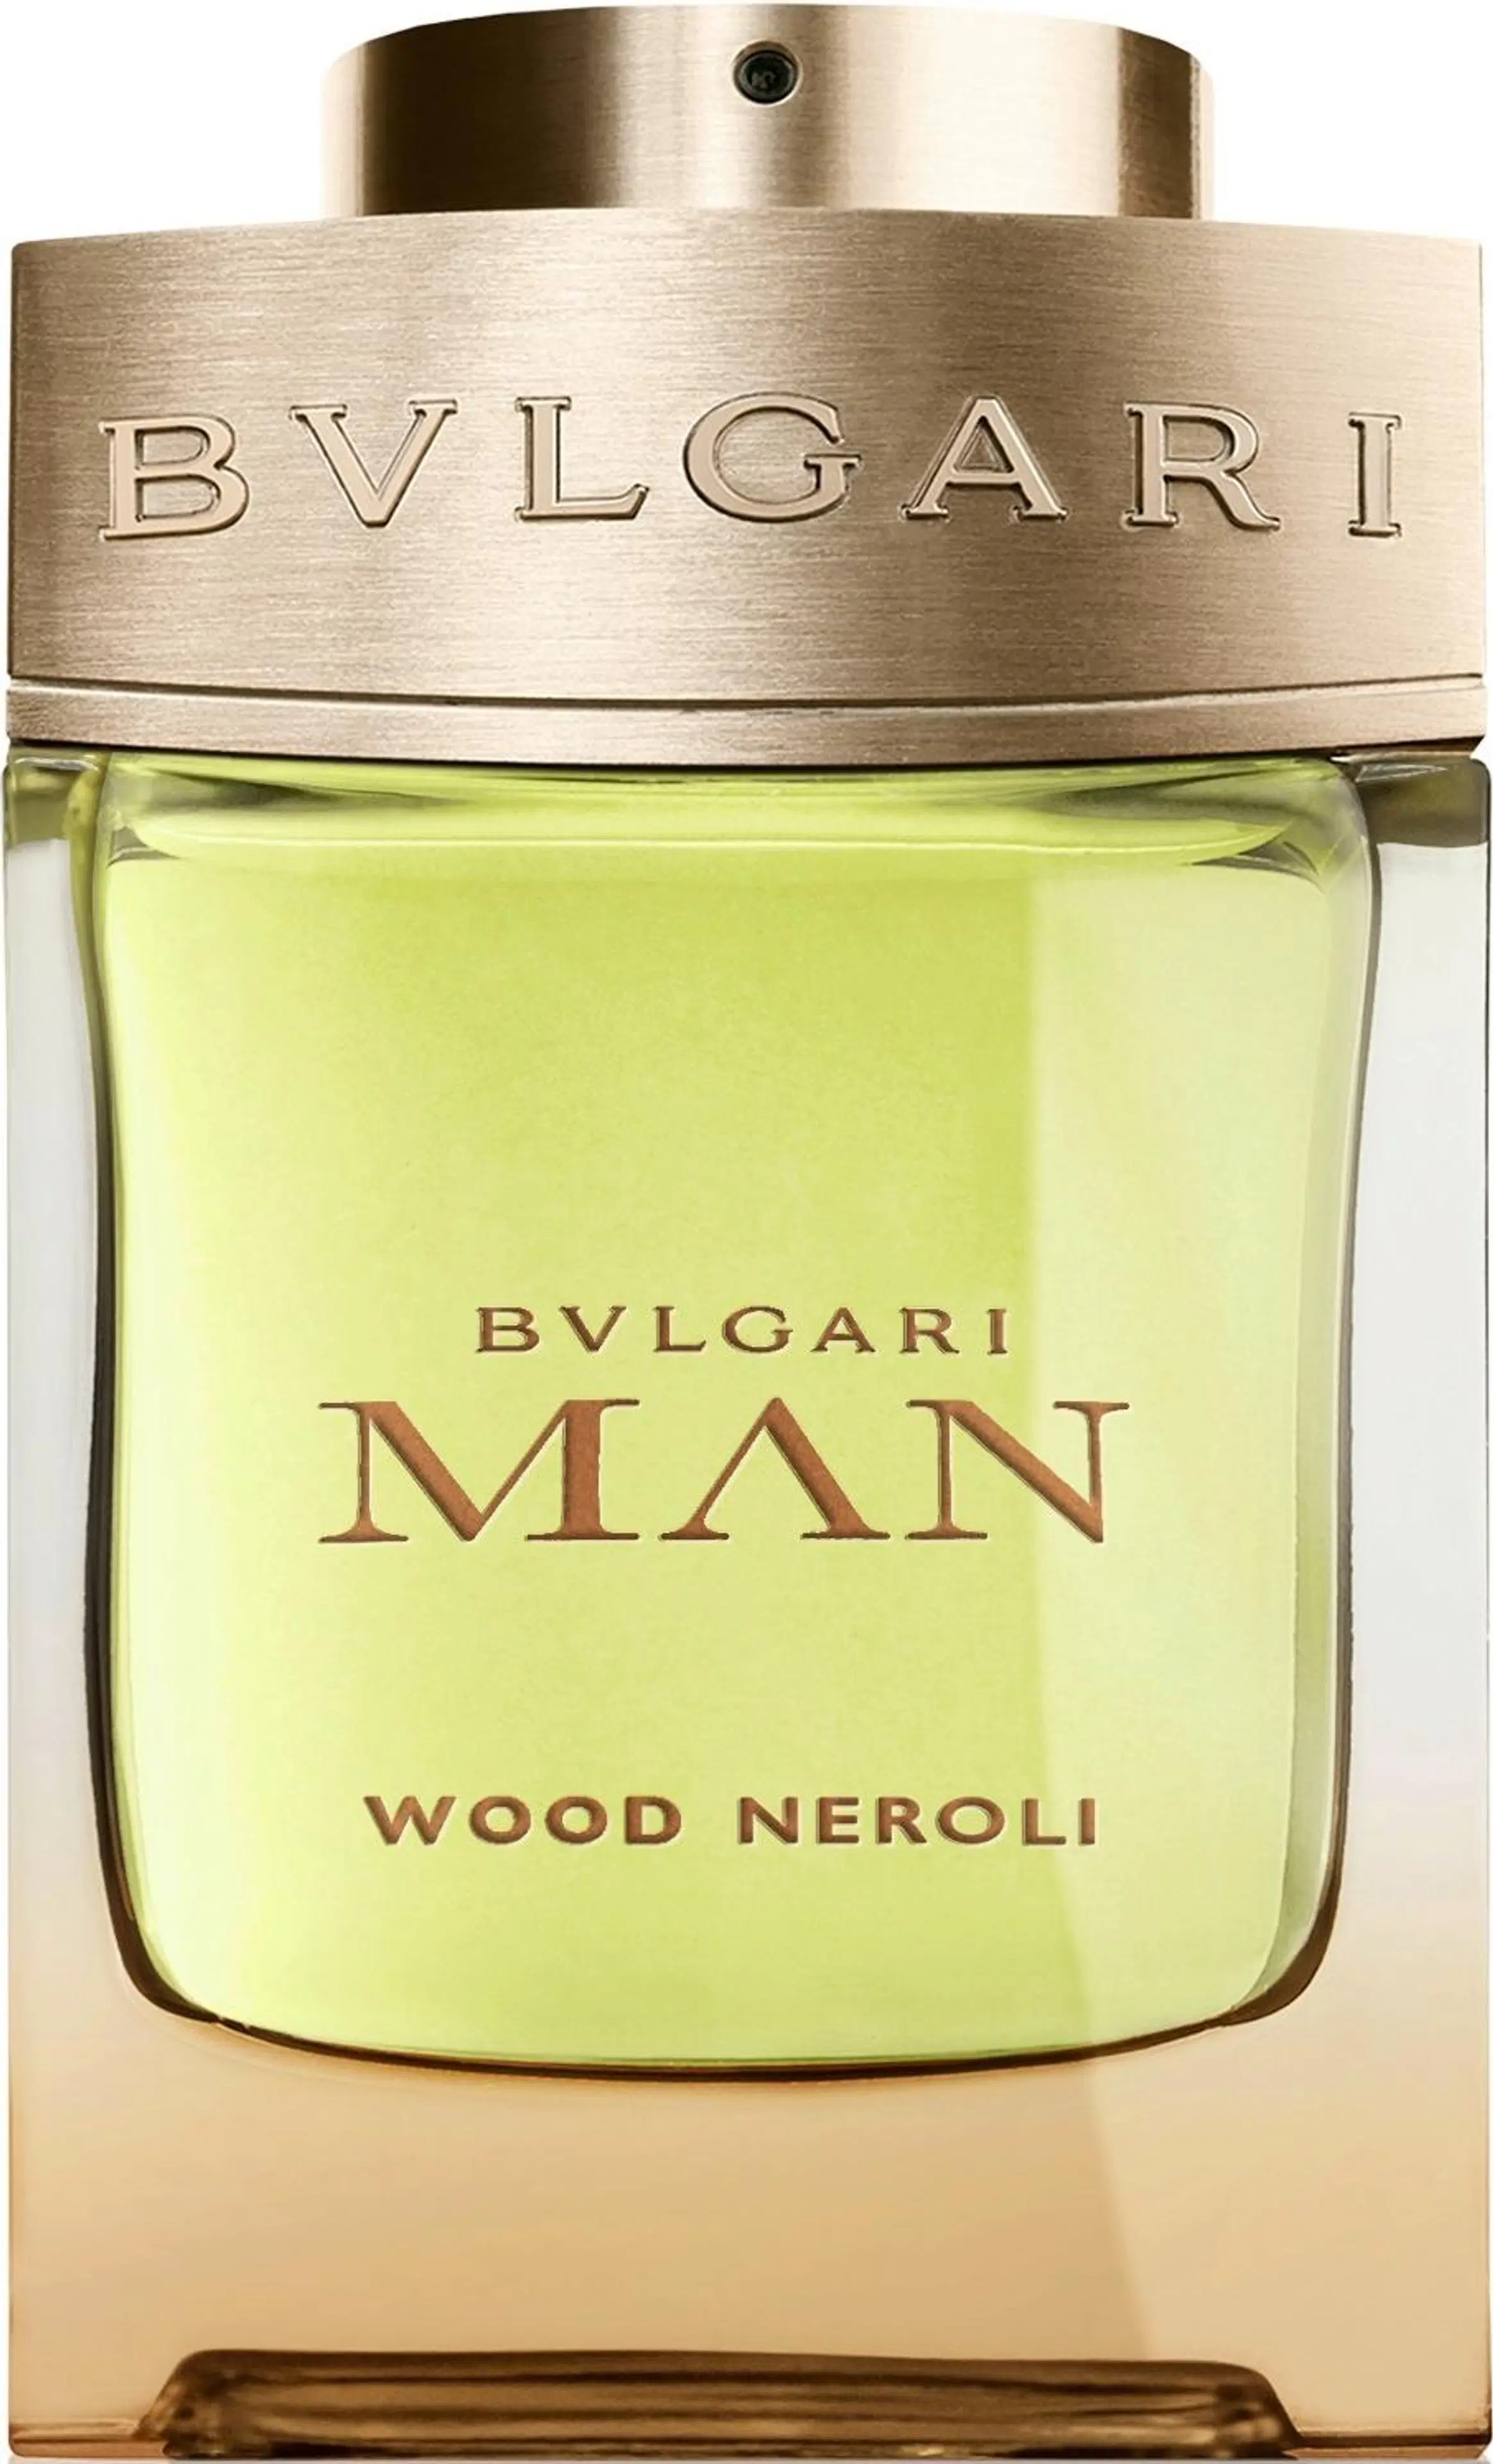 Bvlgari Man Wood Neroli EdP tuoksu 60 ml